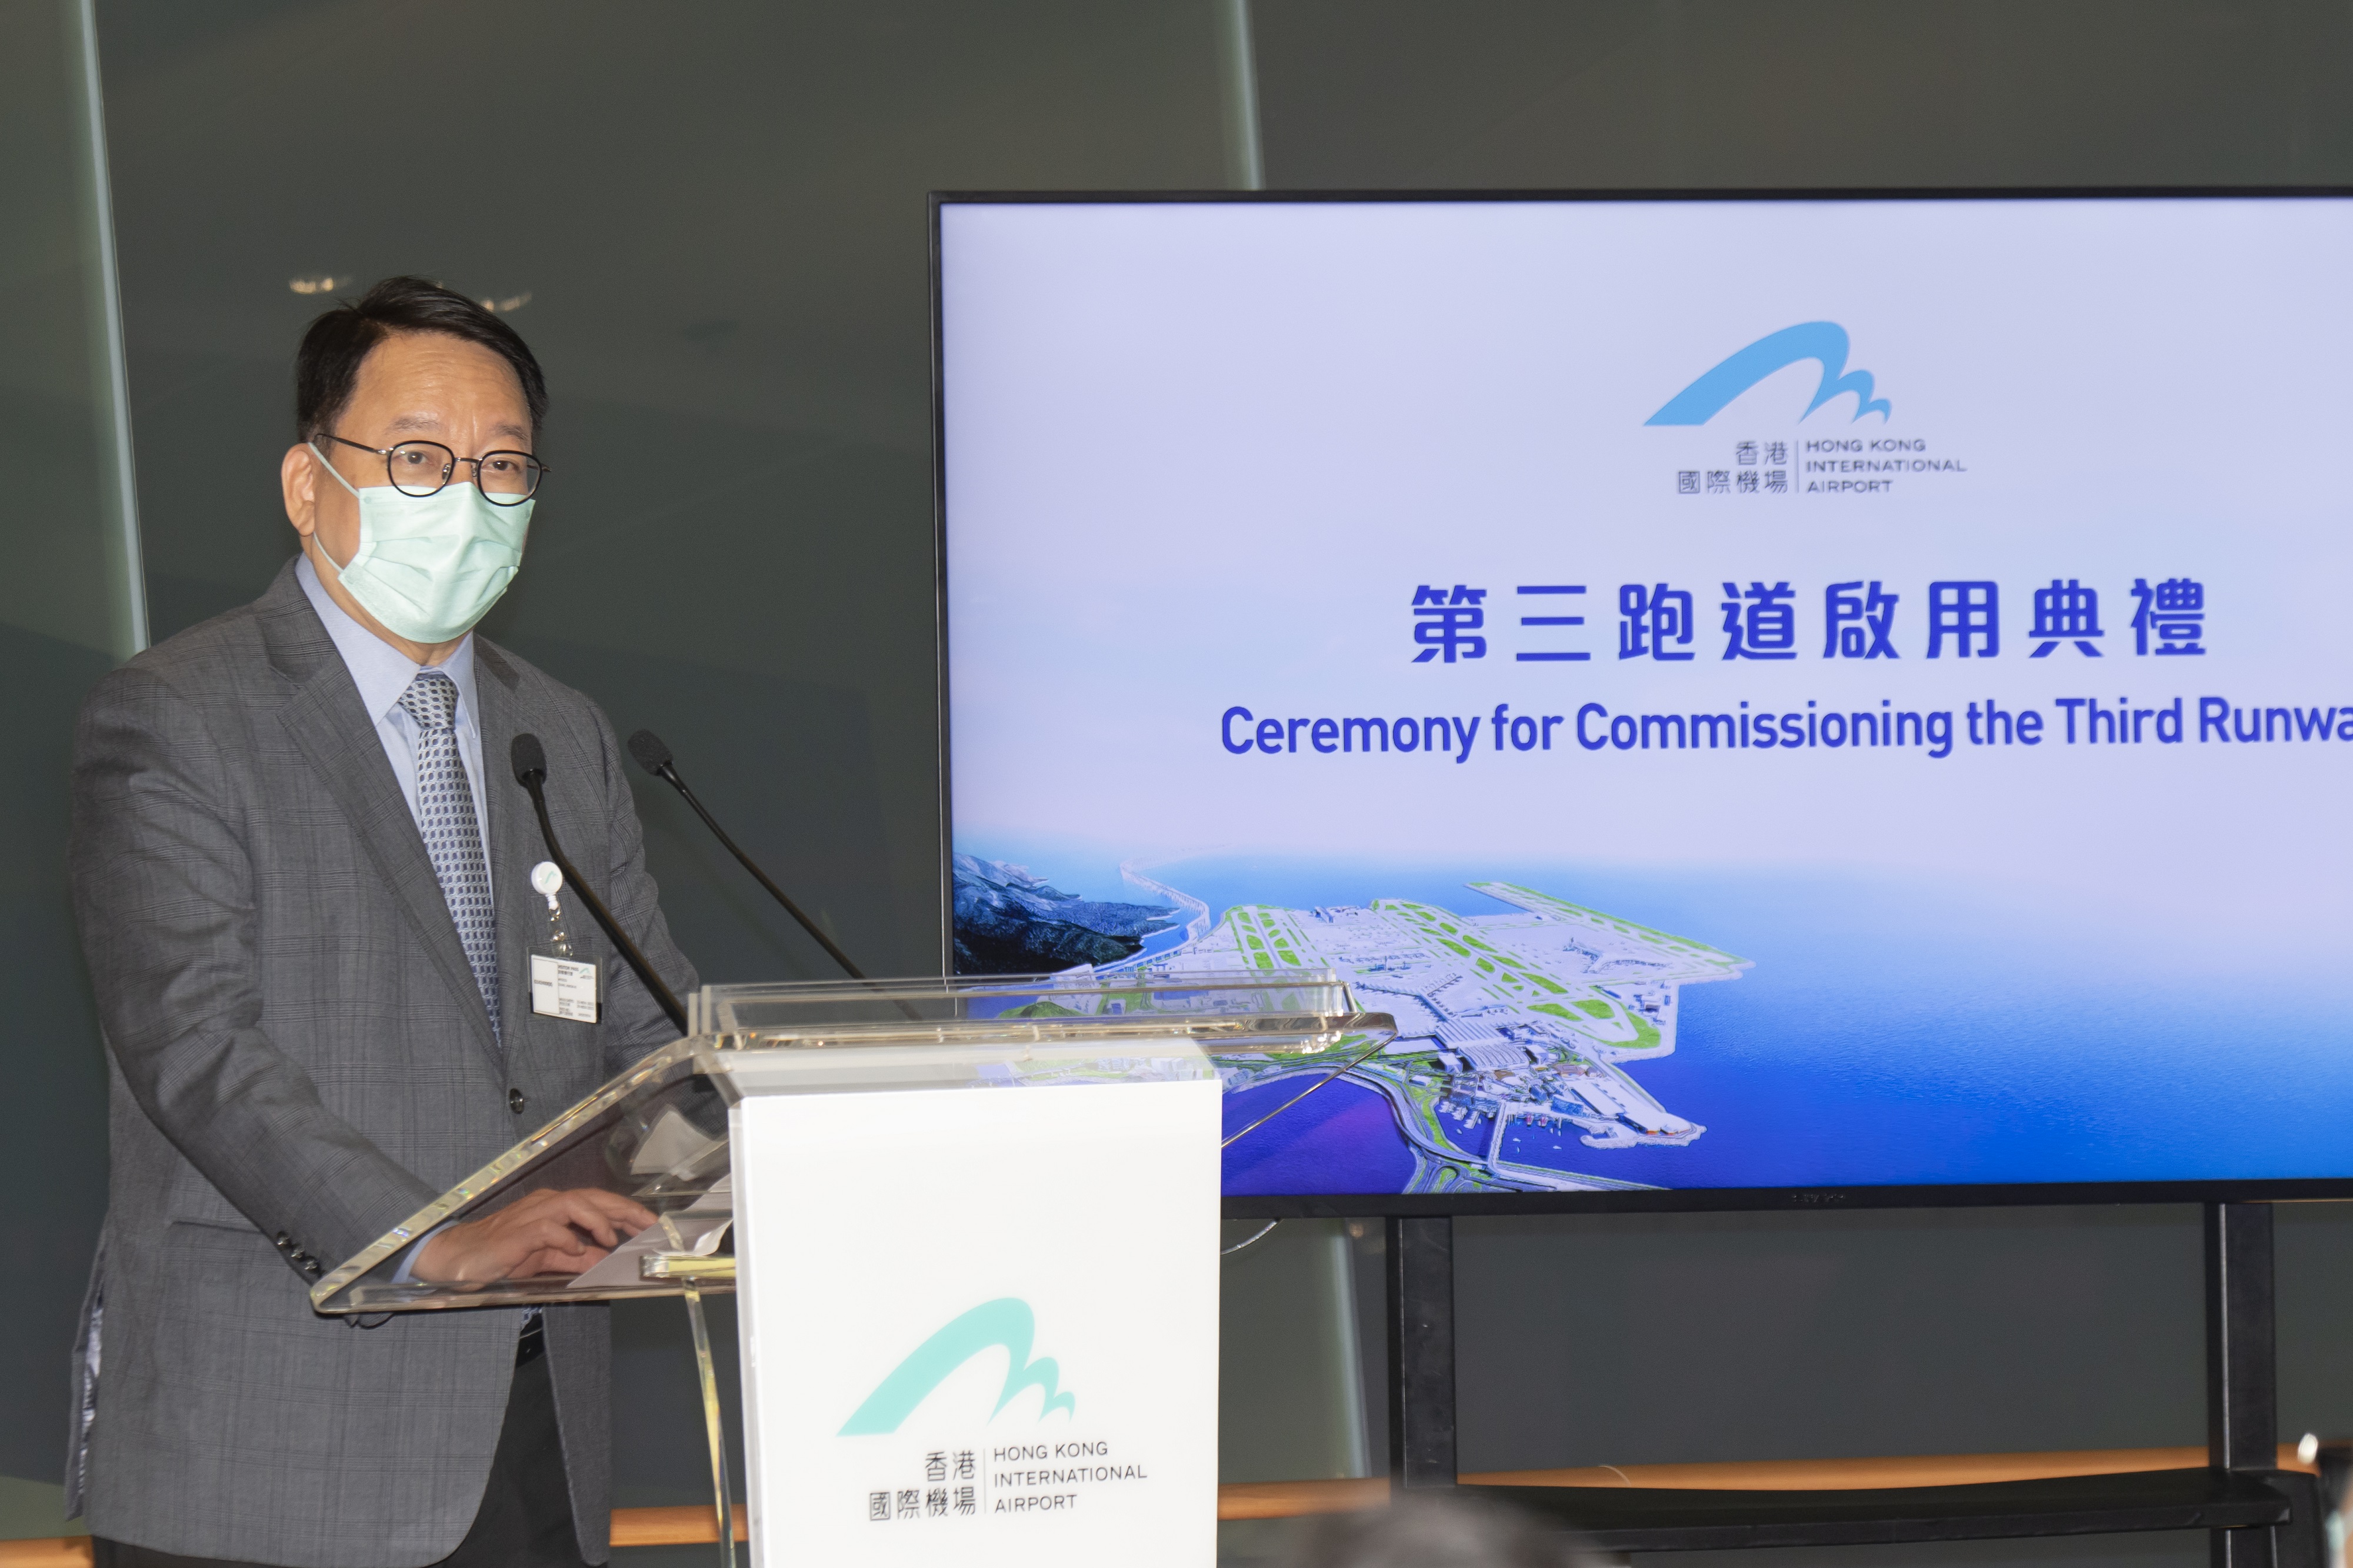 政务司司长陈国基在典礼致辞时表示，发展三跑道系统将能大幅提升香港国际机场的客货运能力。